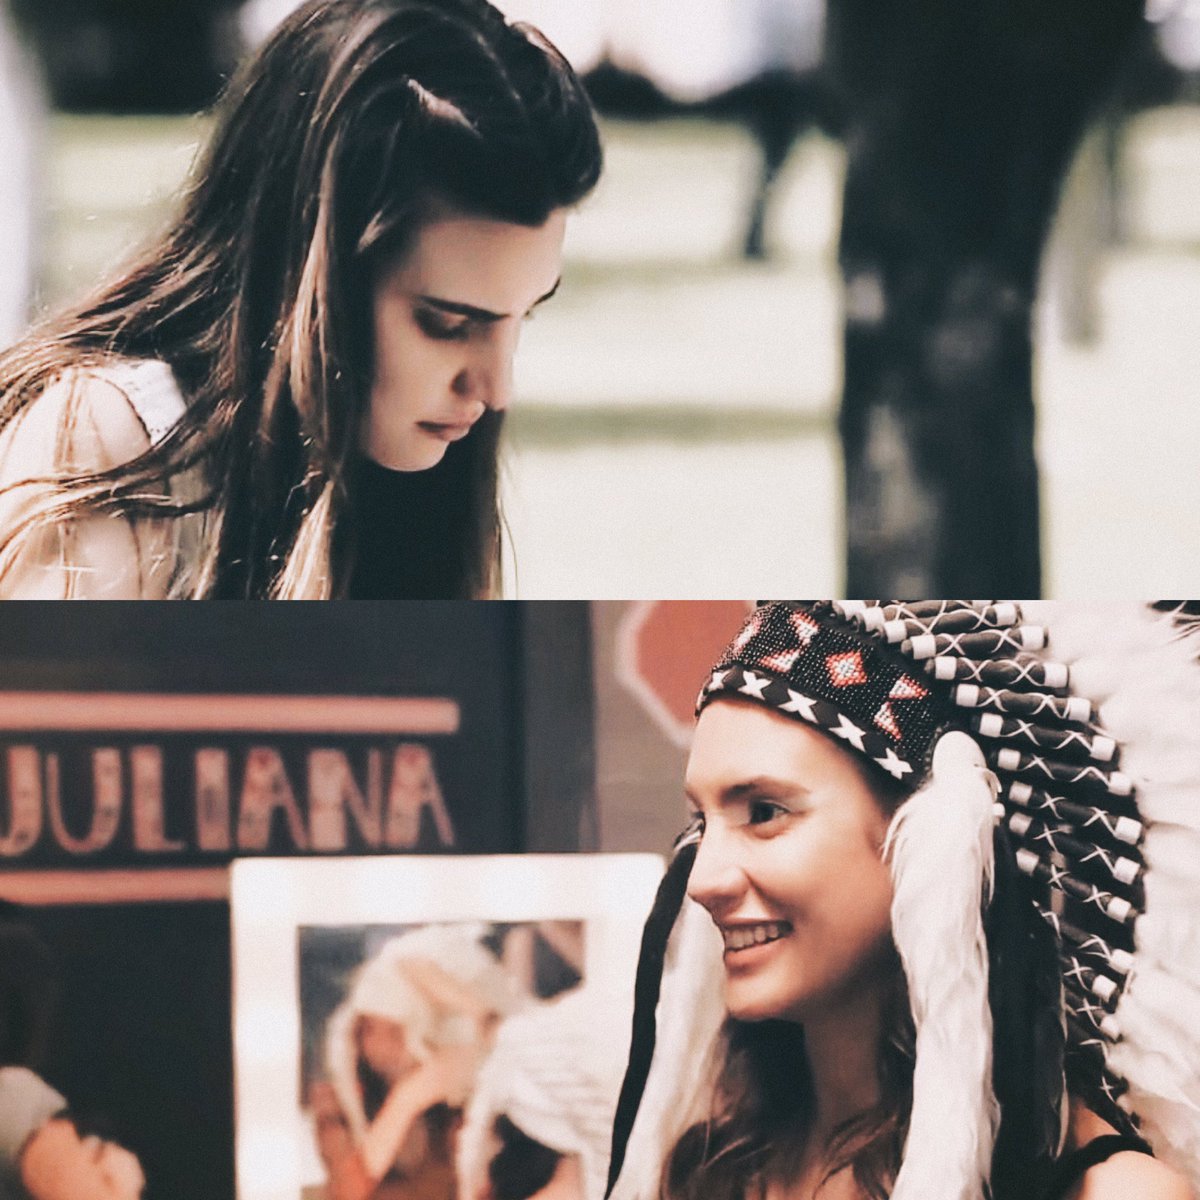 “Ella es la única persona que me puso una sonrisa en la cara después de que se murió mi papá”. Antes de Juliana y después de Juliana. #Juliantina